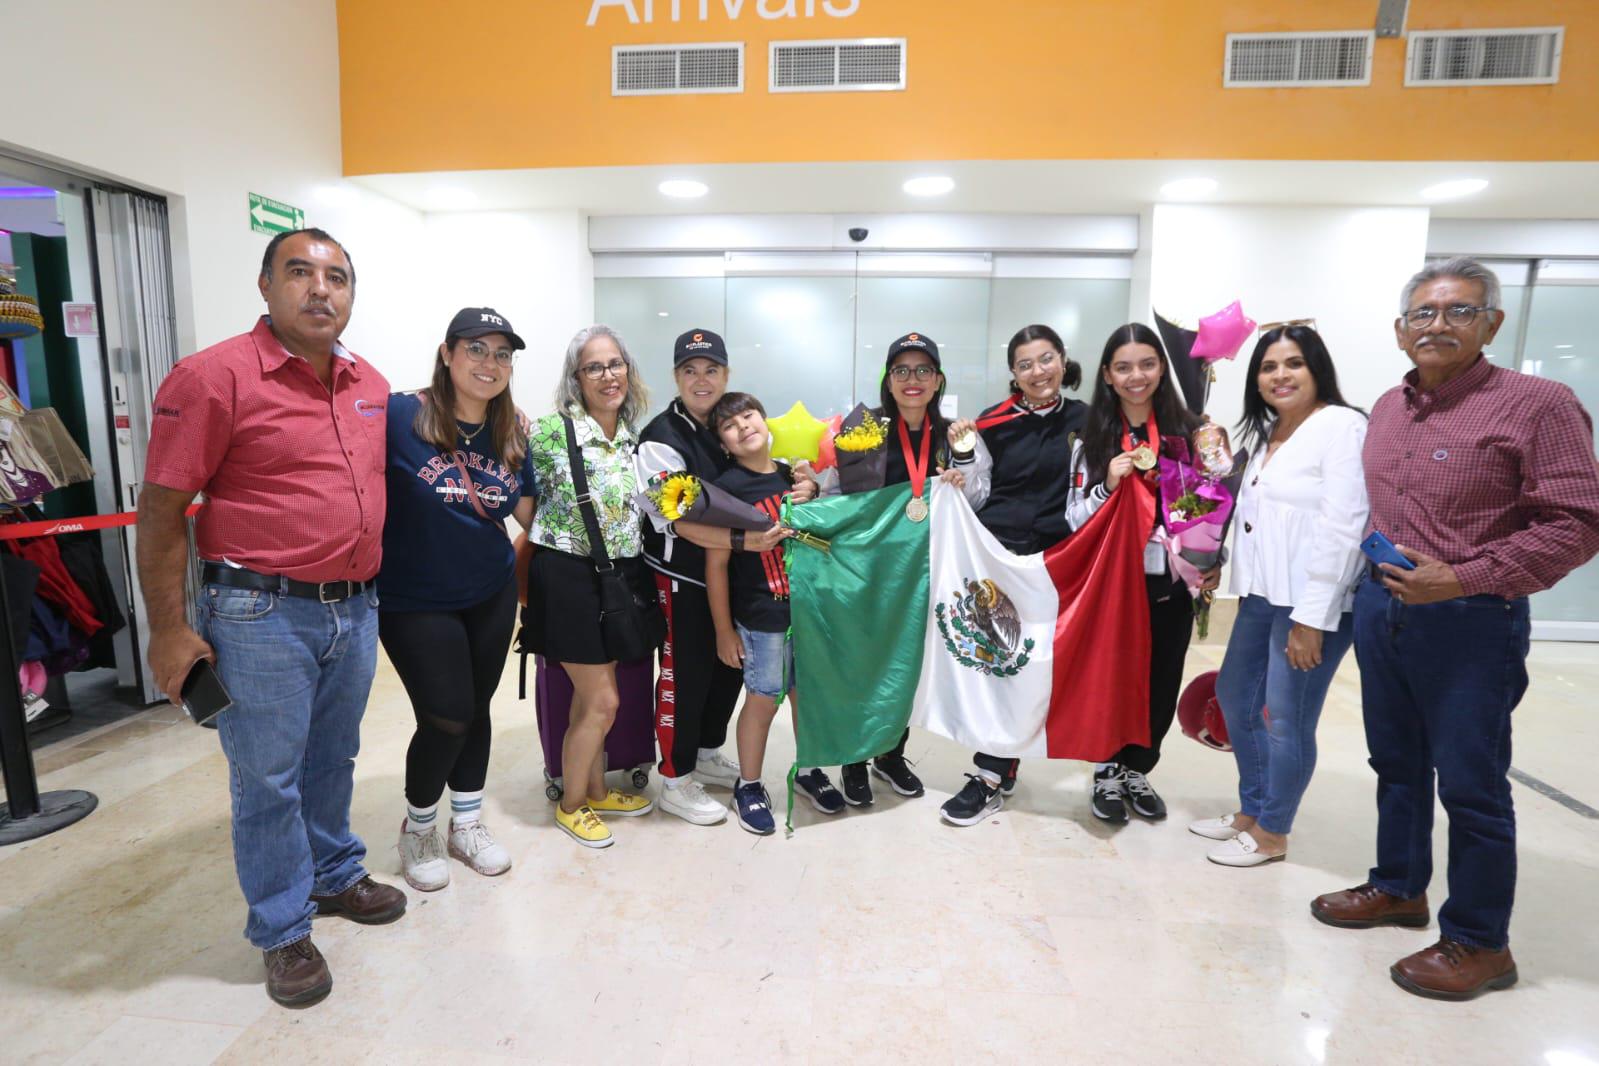 $!Llegan a Mazatlán las alumnas y maestra de oro de la Prepa Vasconcelos